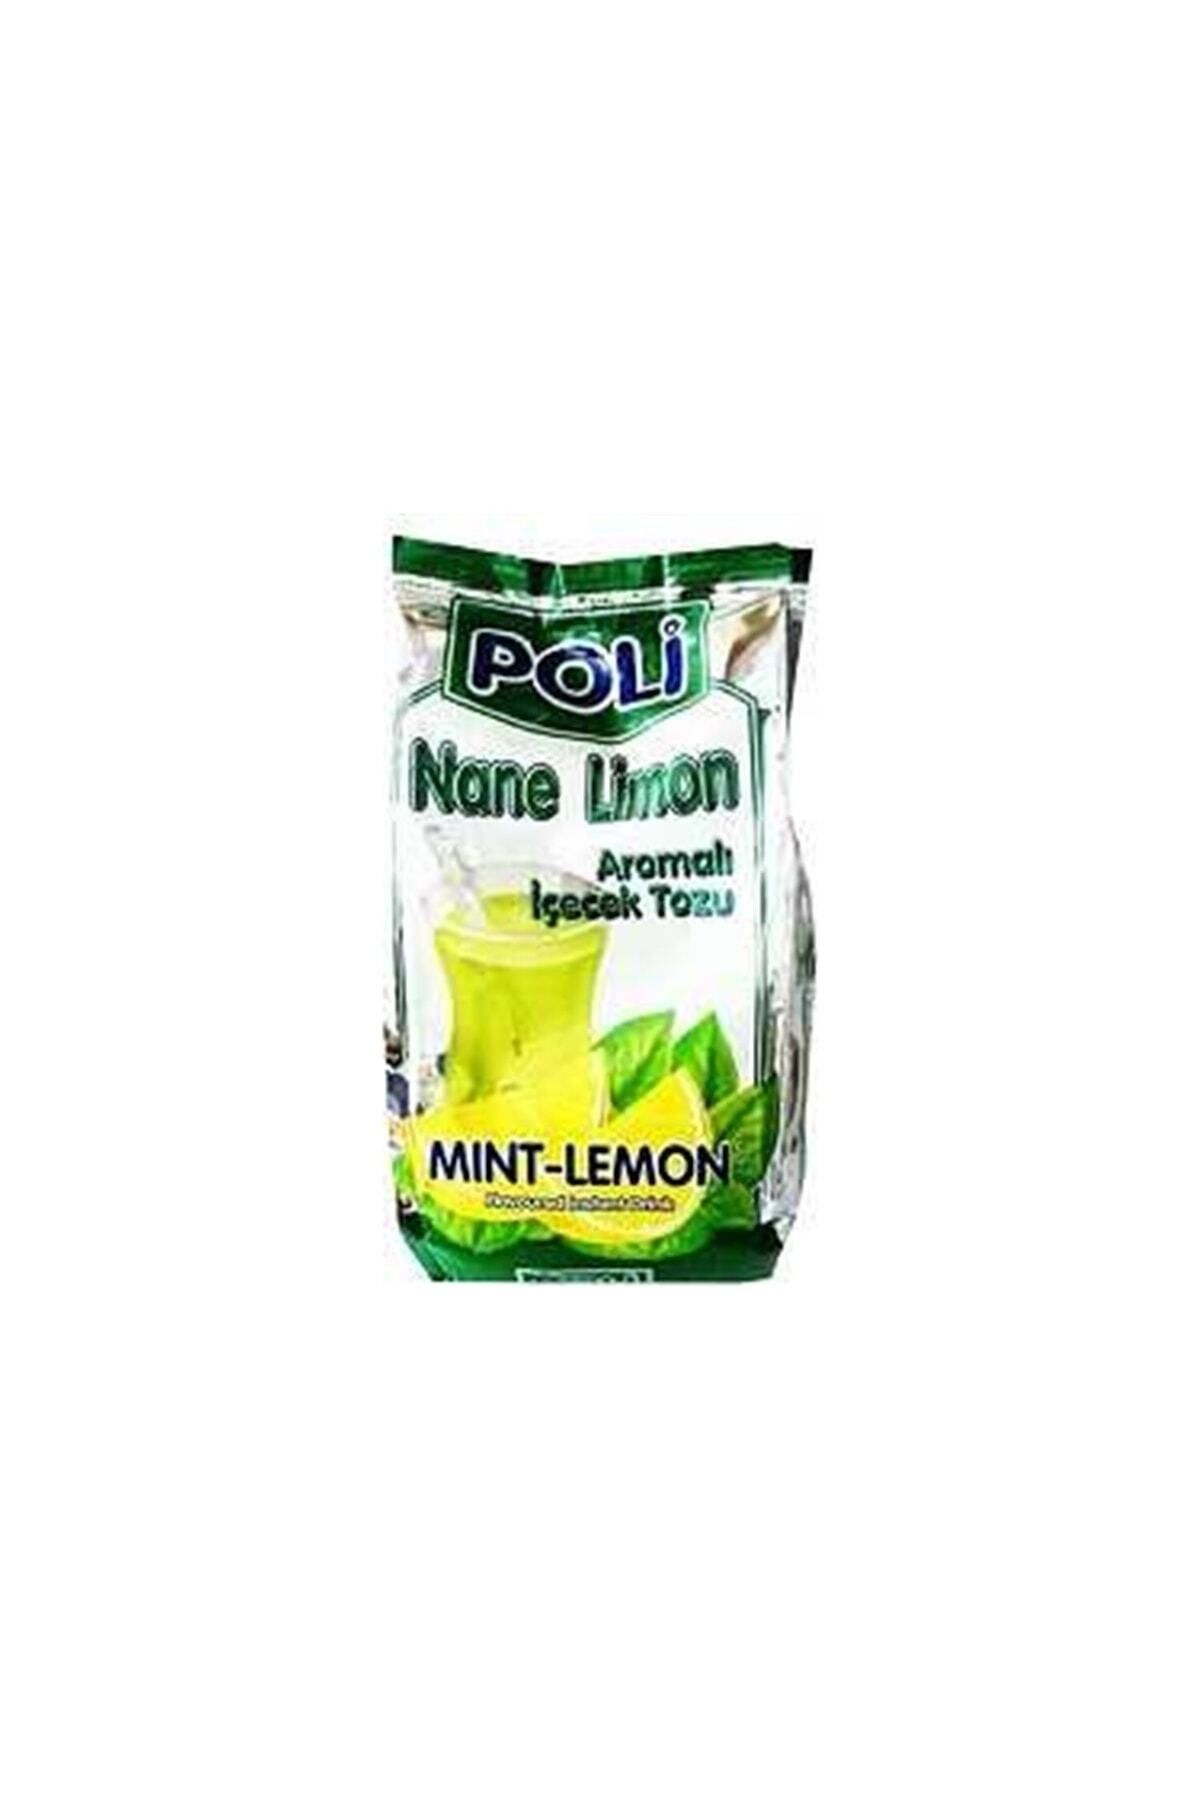 Poli Nane Limon 250 gr